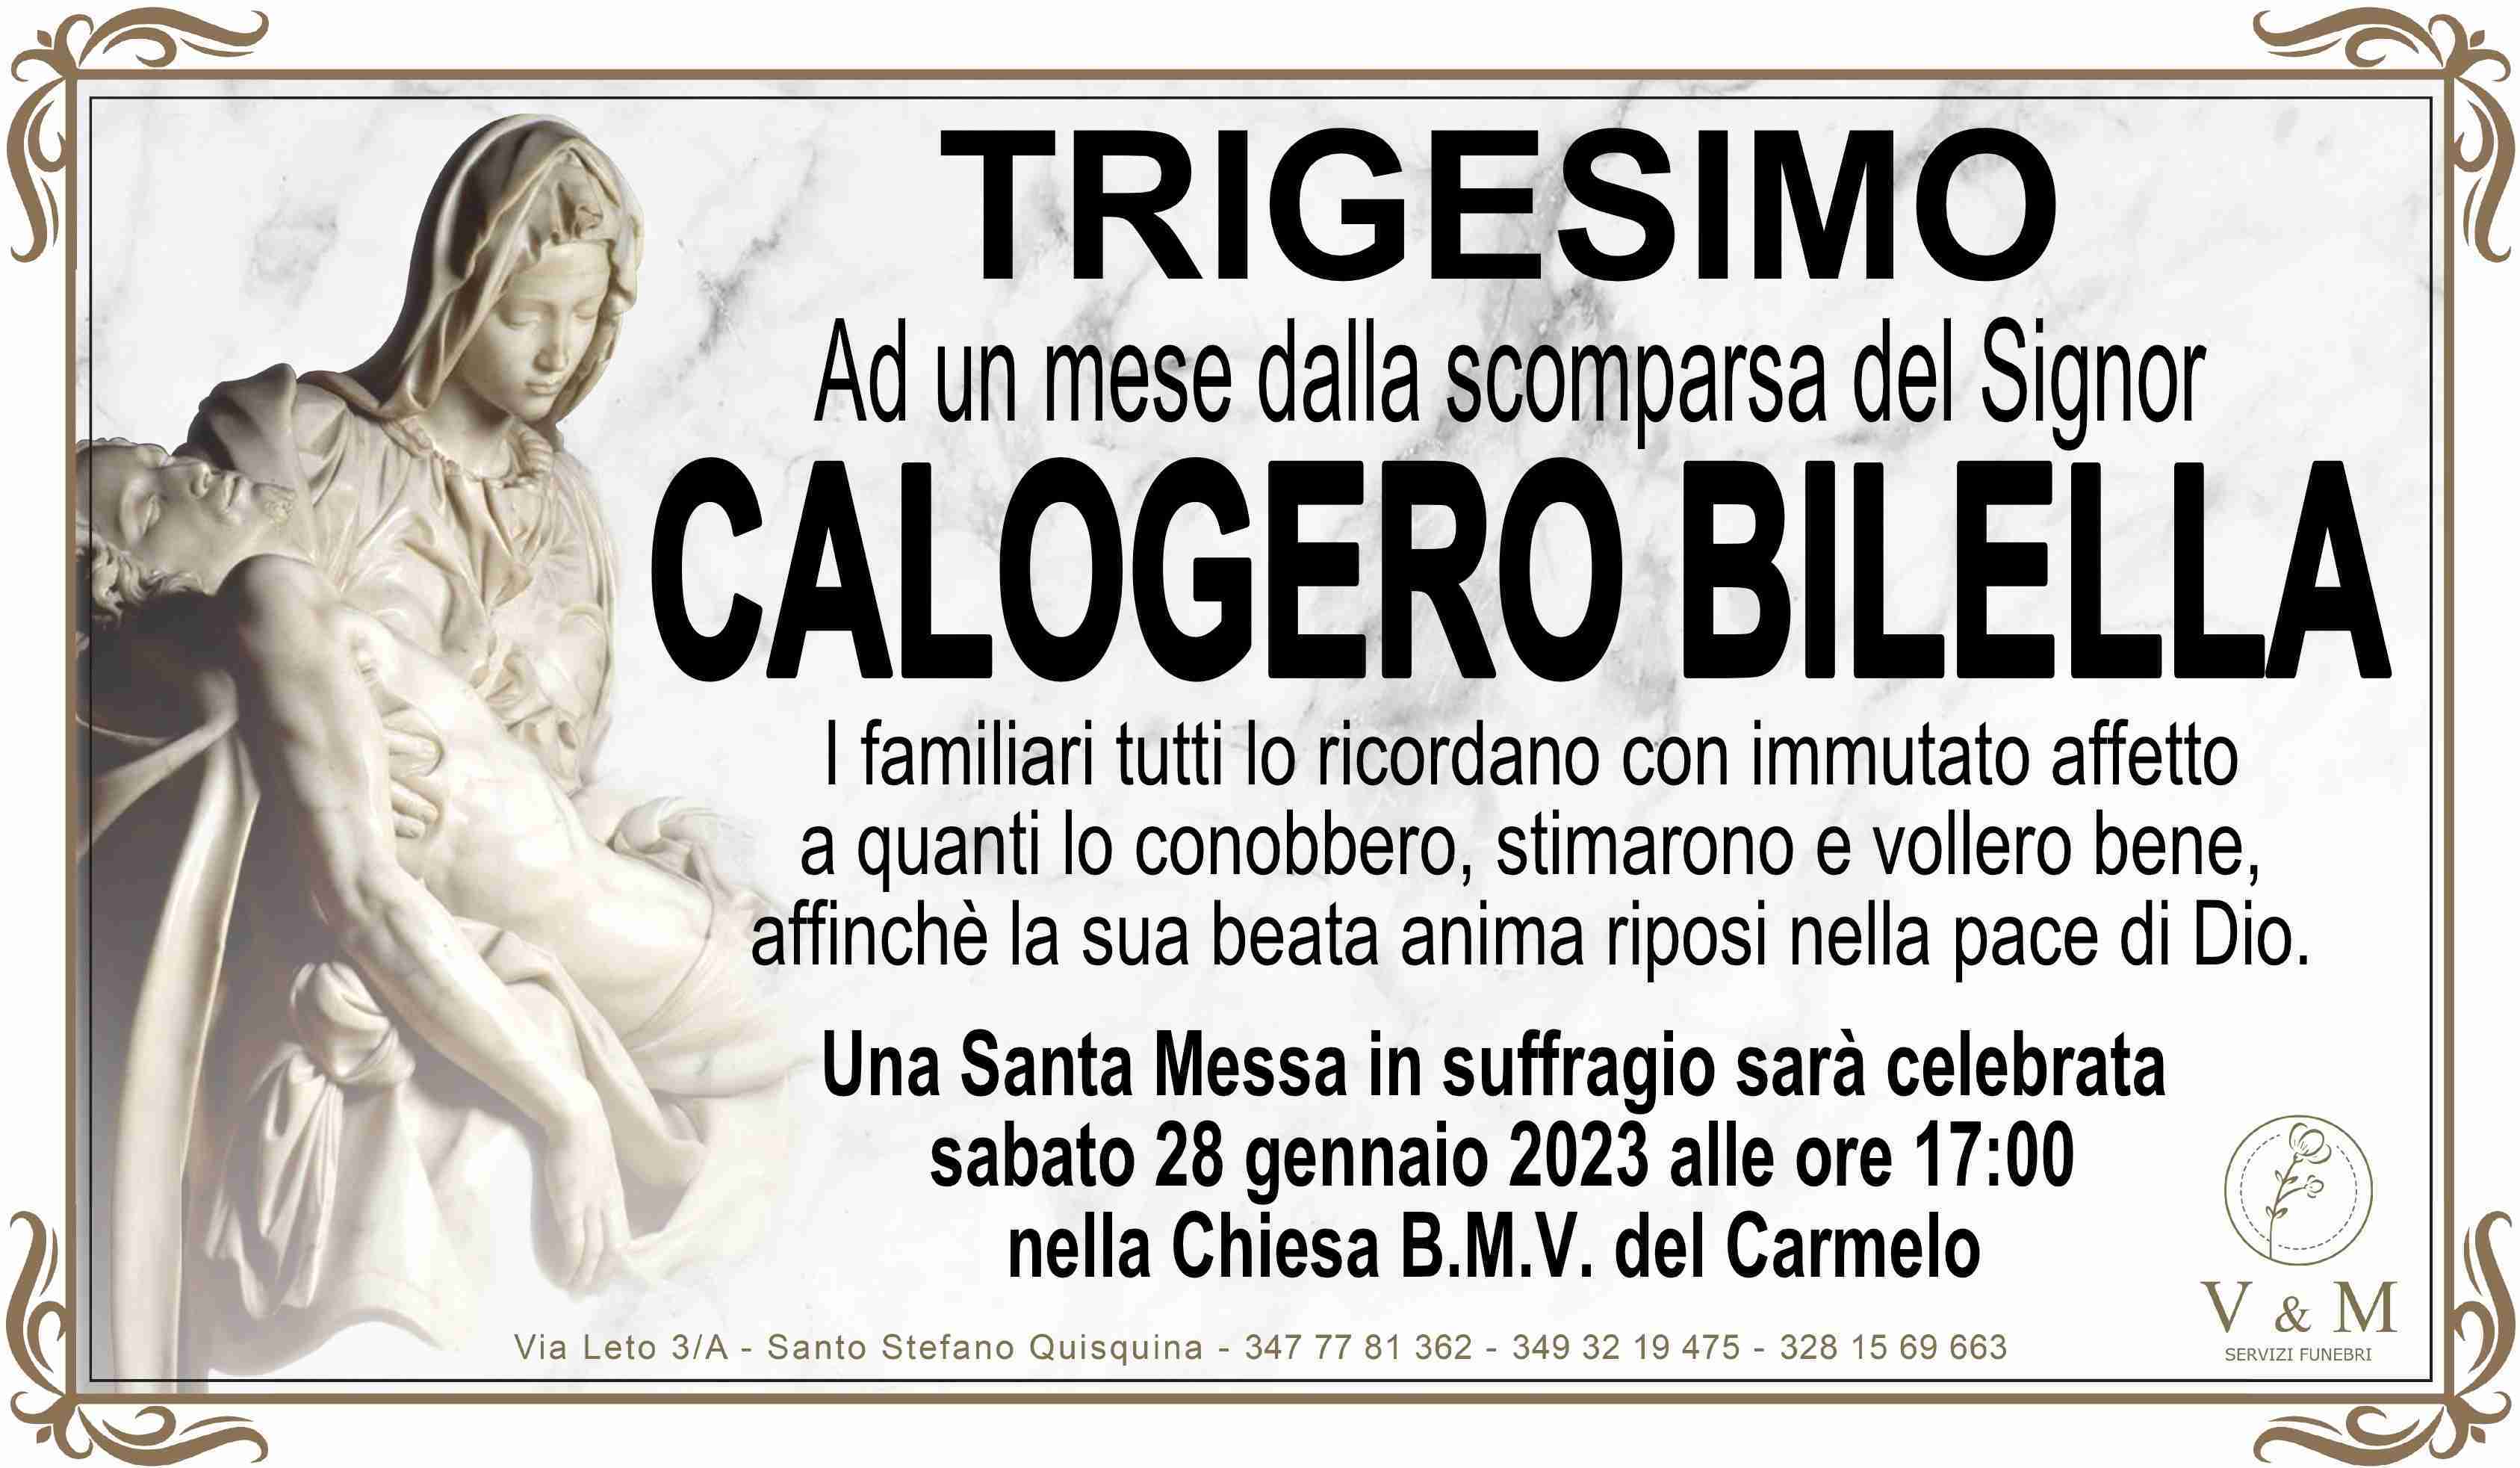 Calogero Bilella